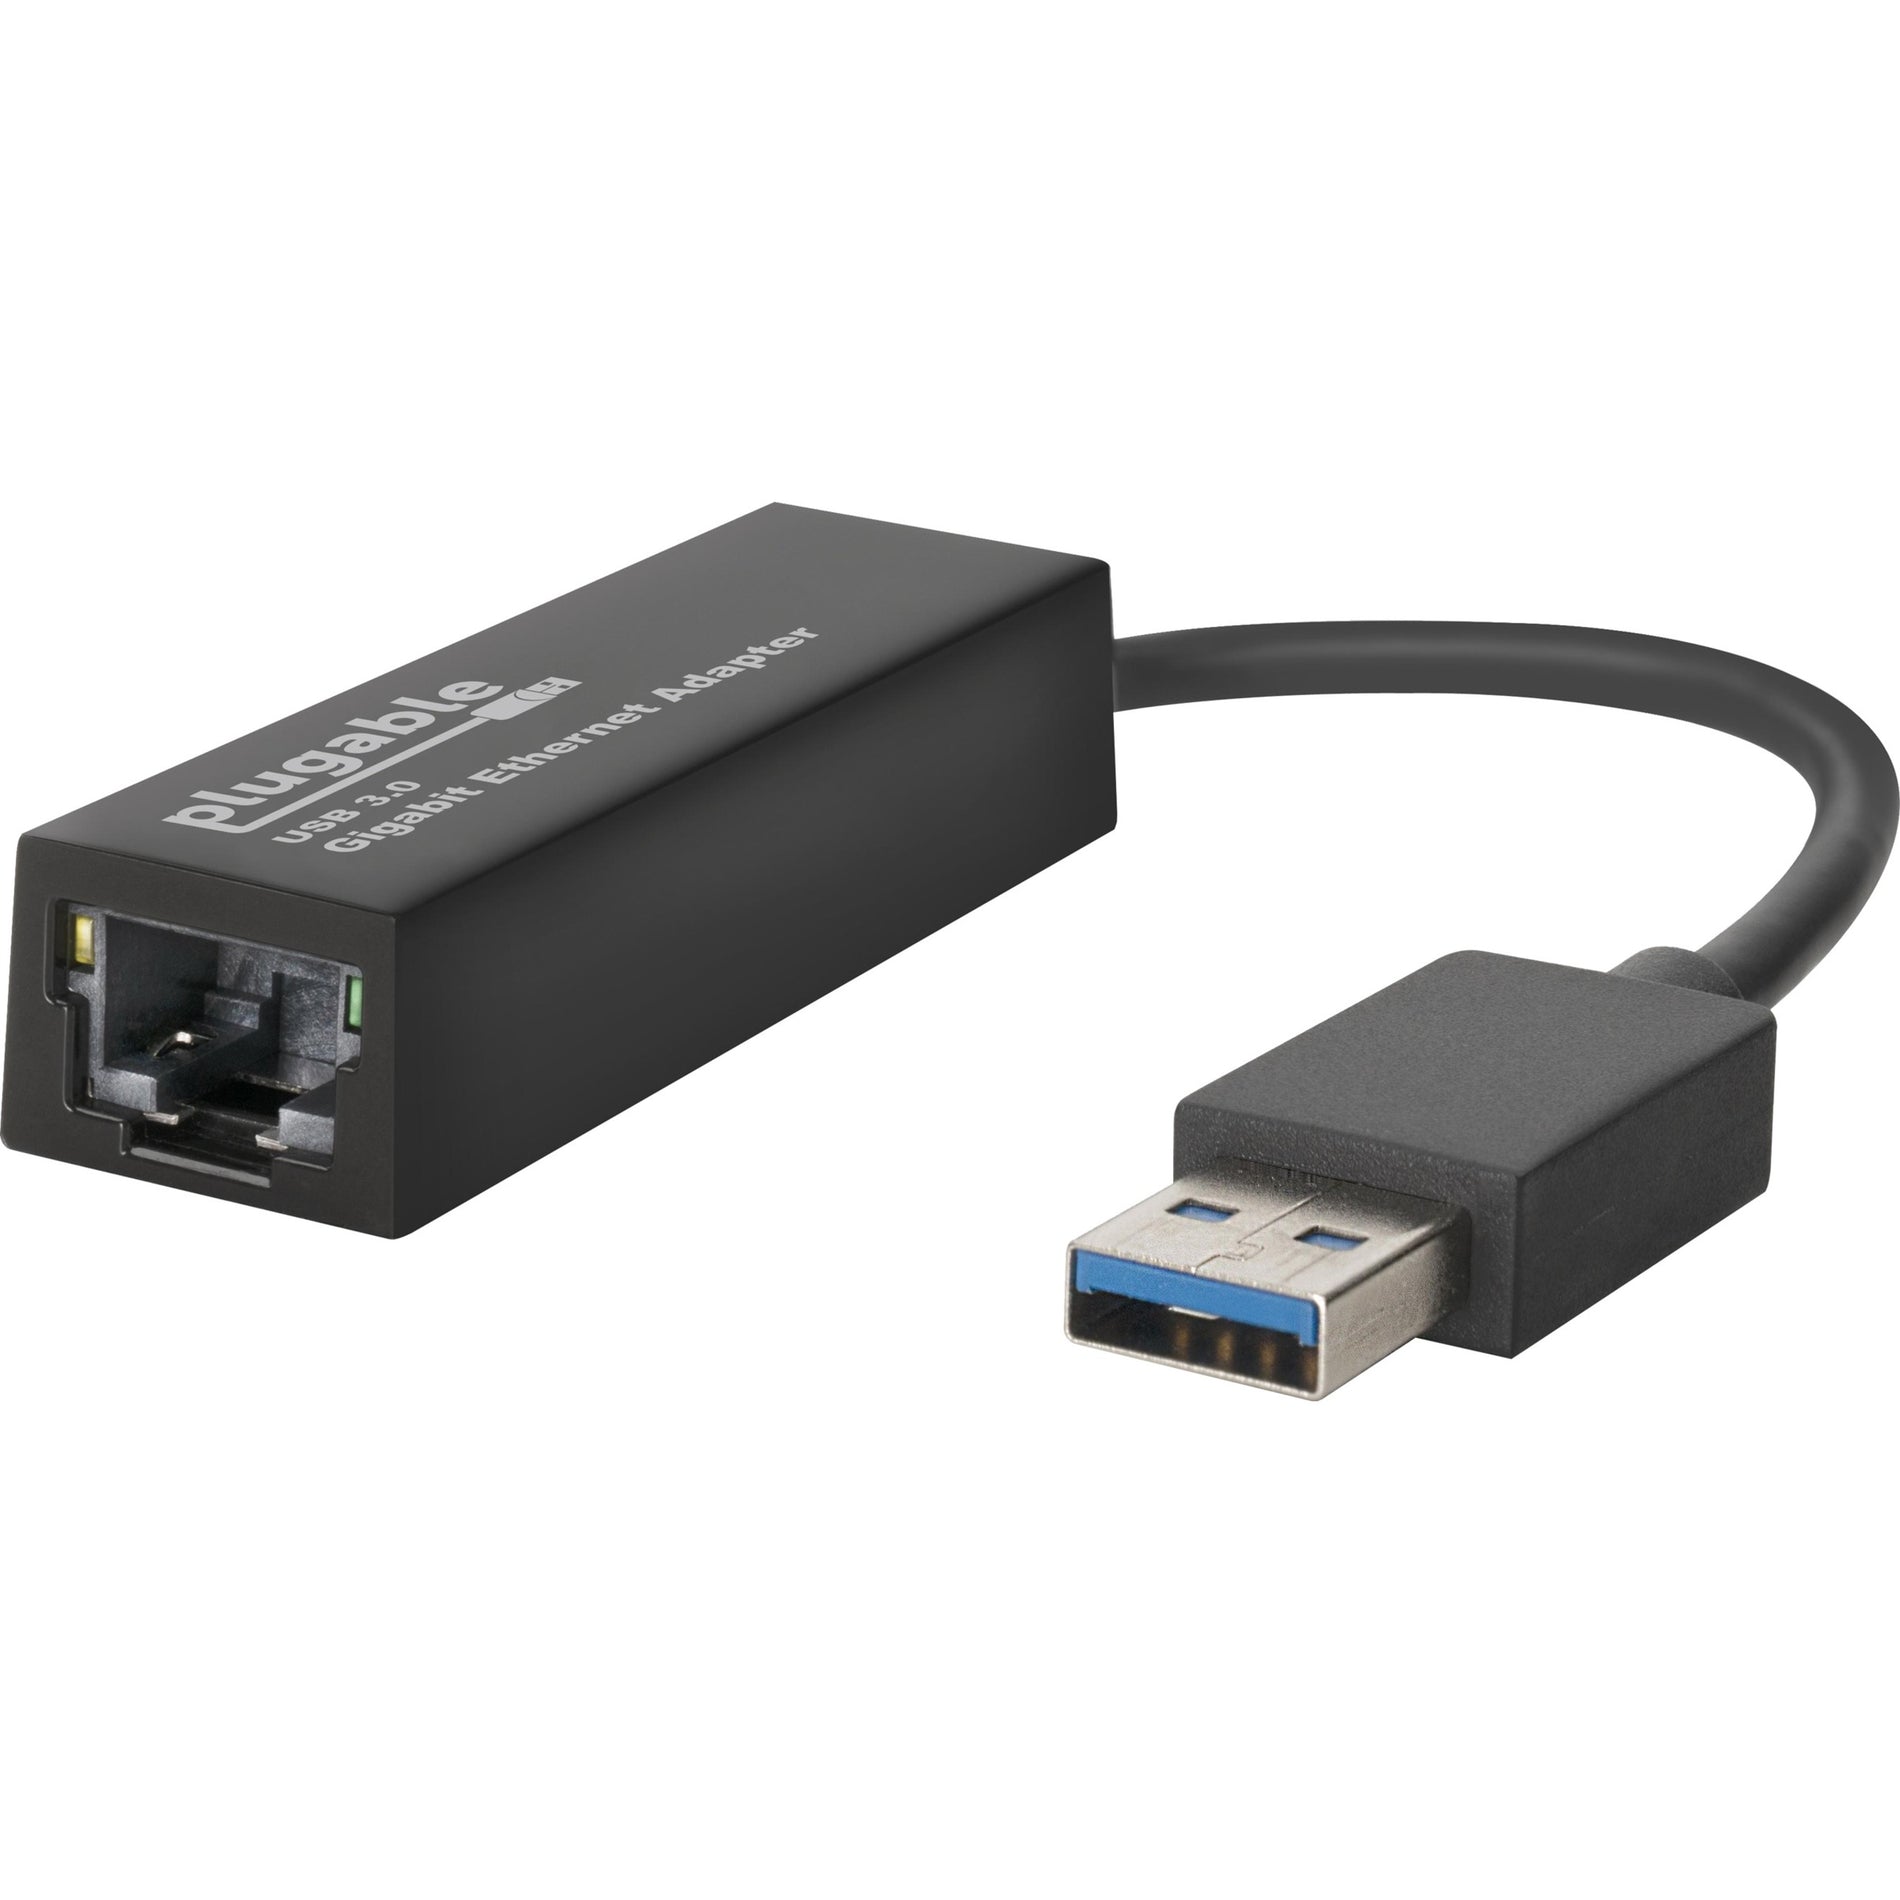 محول USB3-E1000 USB إلى إيثرنت، USB 3.0 إلى إيثرنت جيجابت، نقل بيانات عالية السرعة العلامة التجارية: Plugable